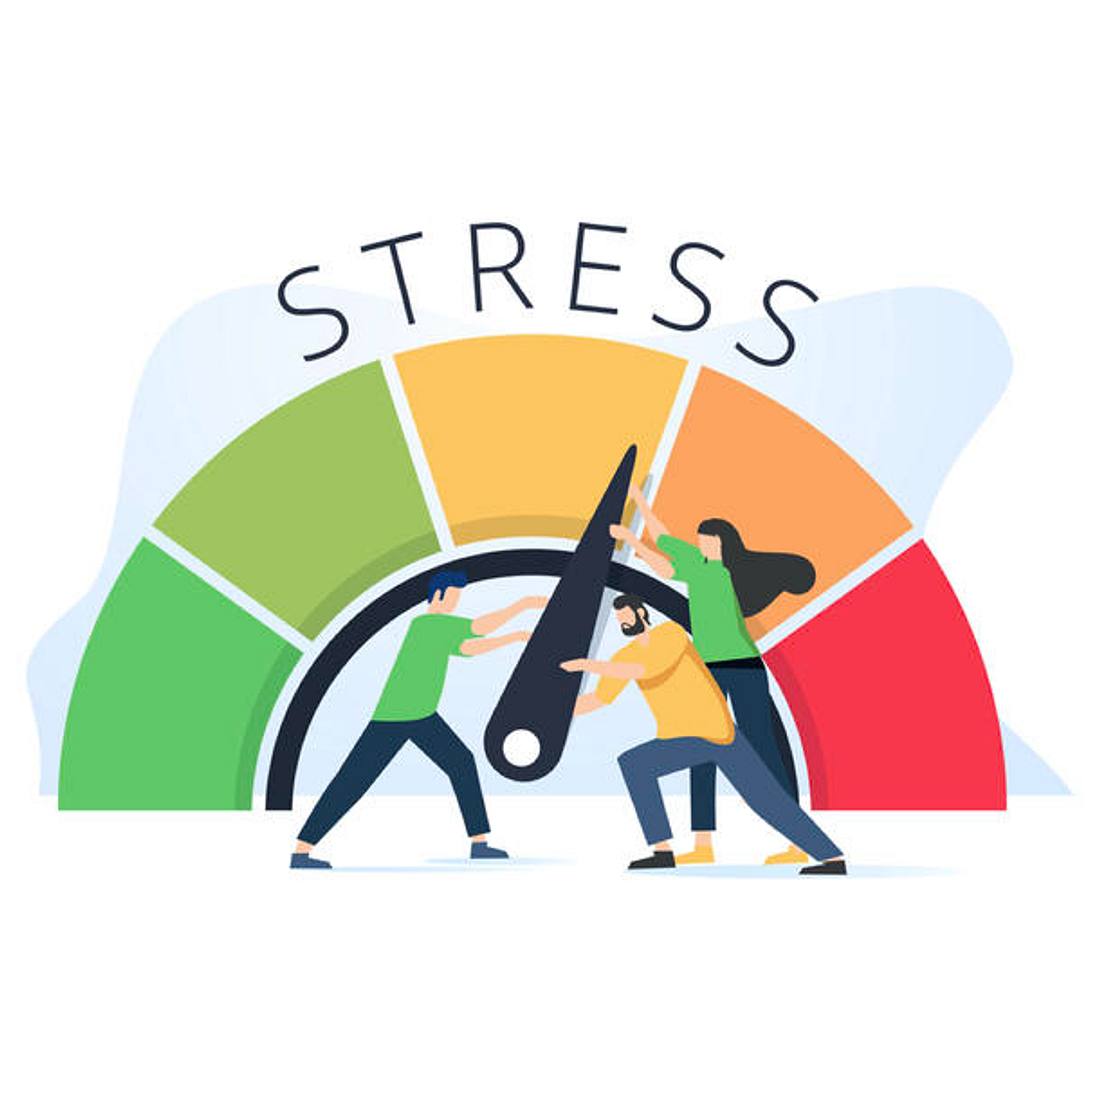 Stress ist äußerst schlecht für unsere Gesundheit.